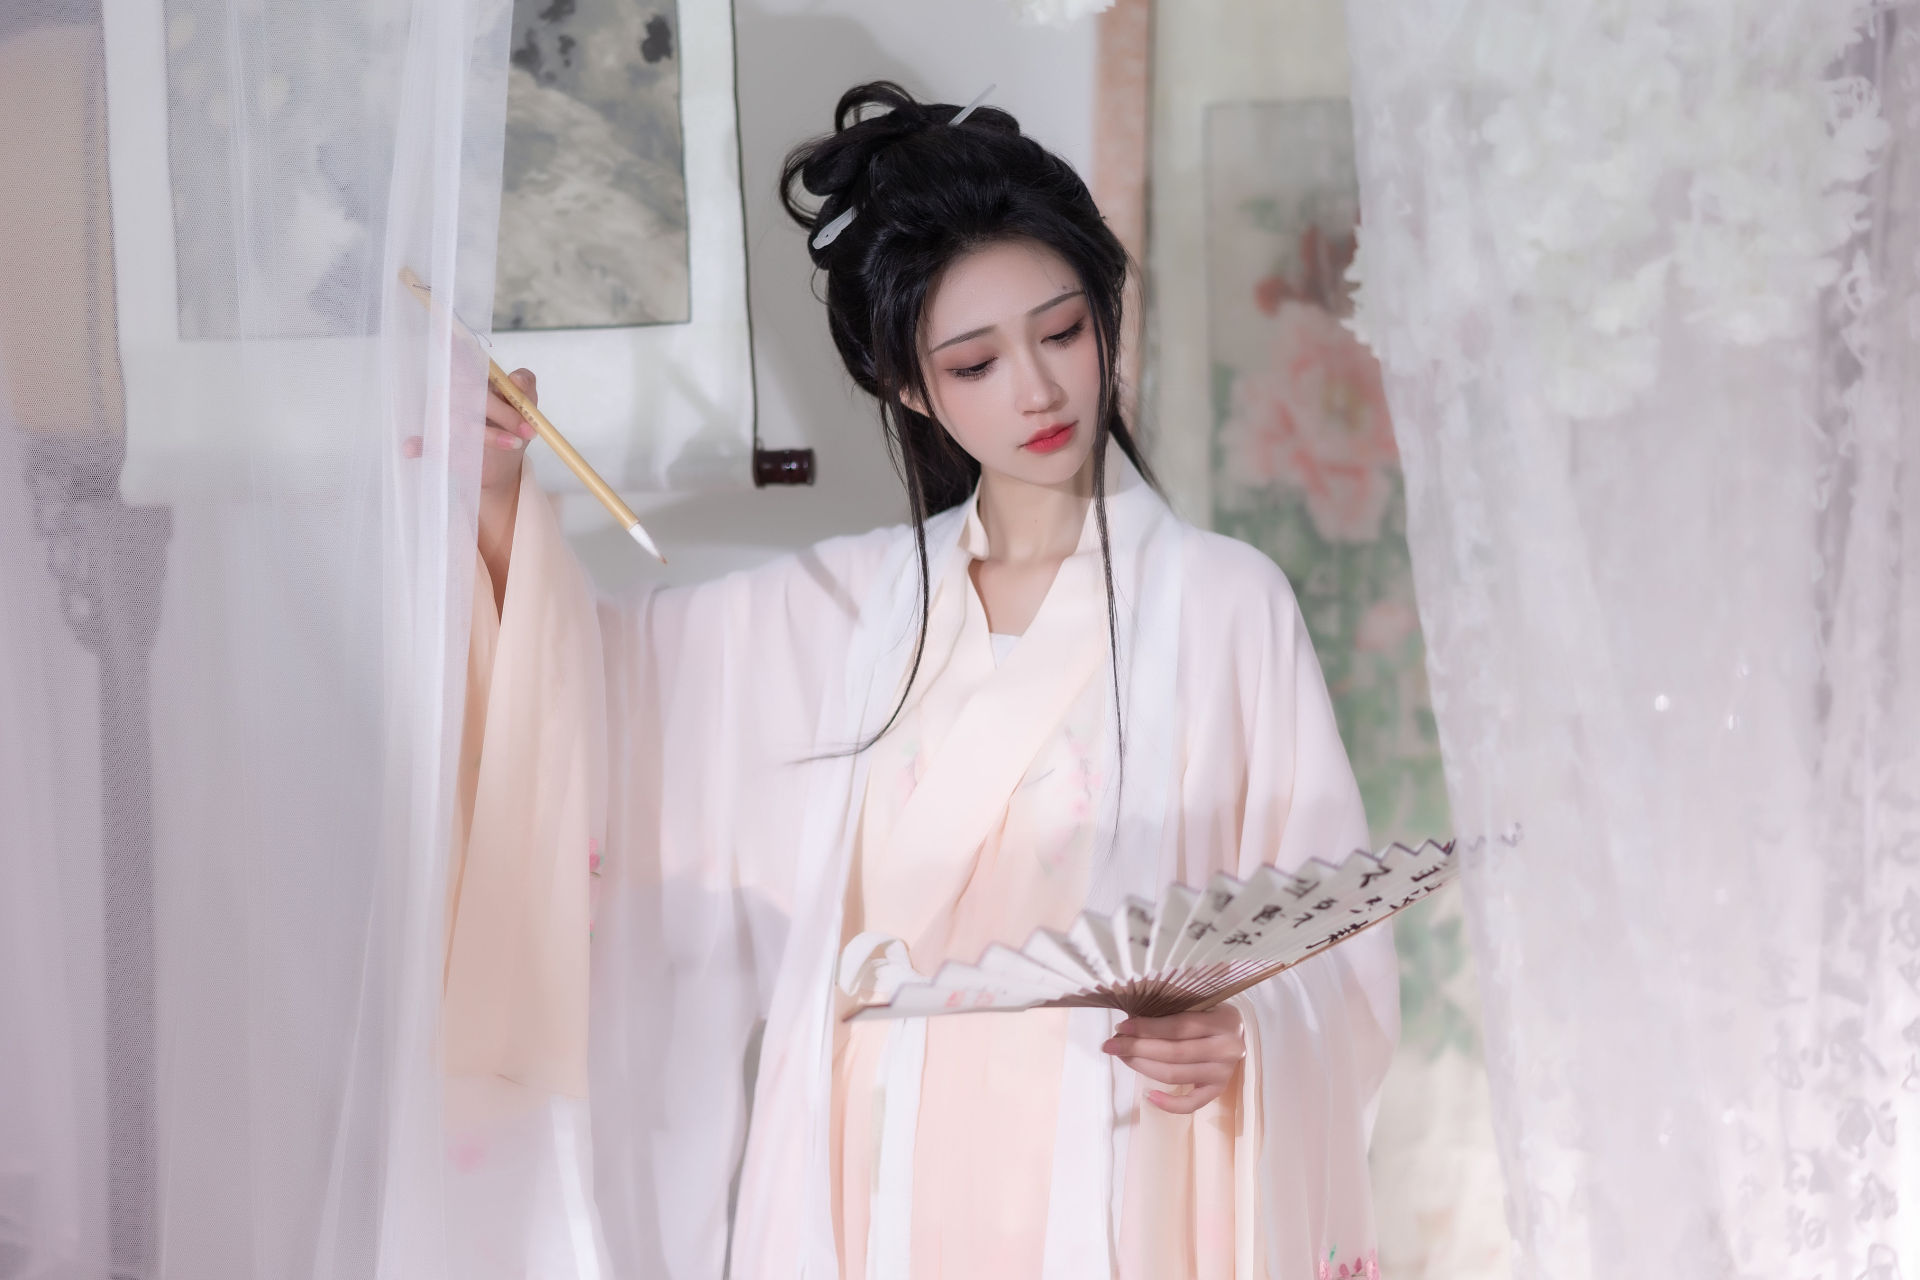 长相 古典 中国风 汉服 古装 美人 模特